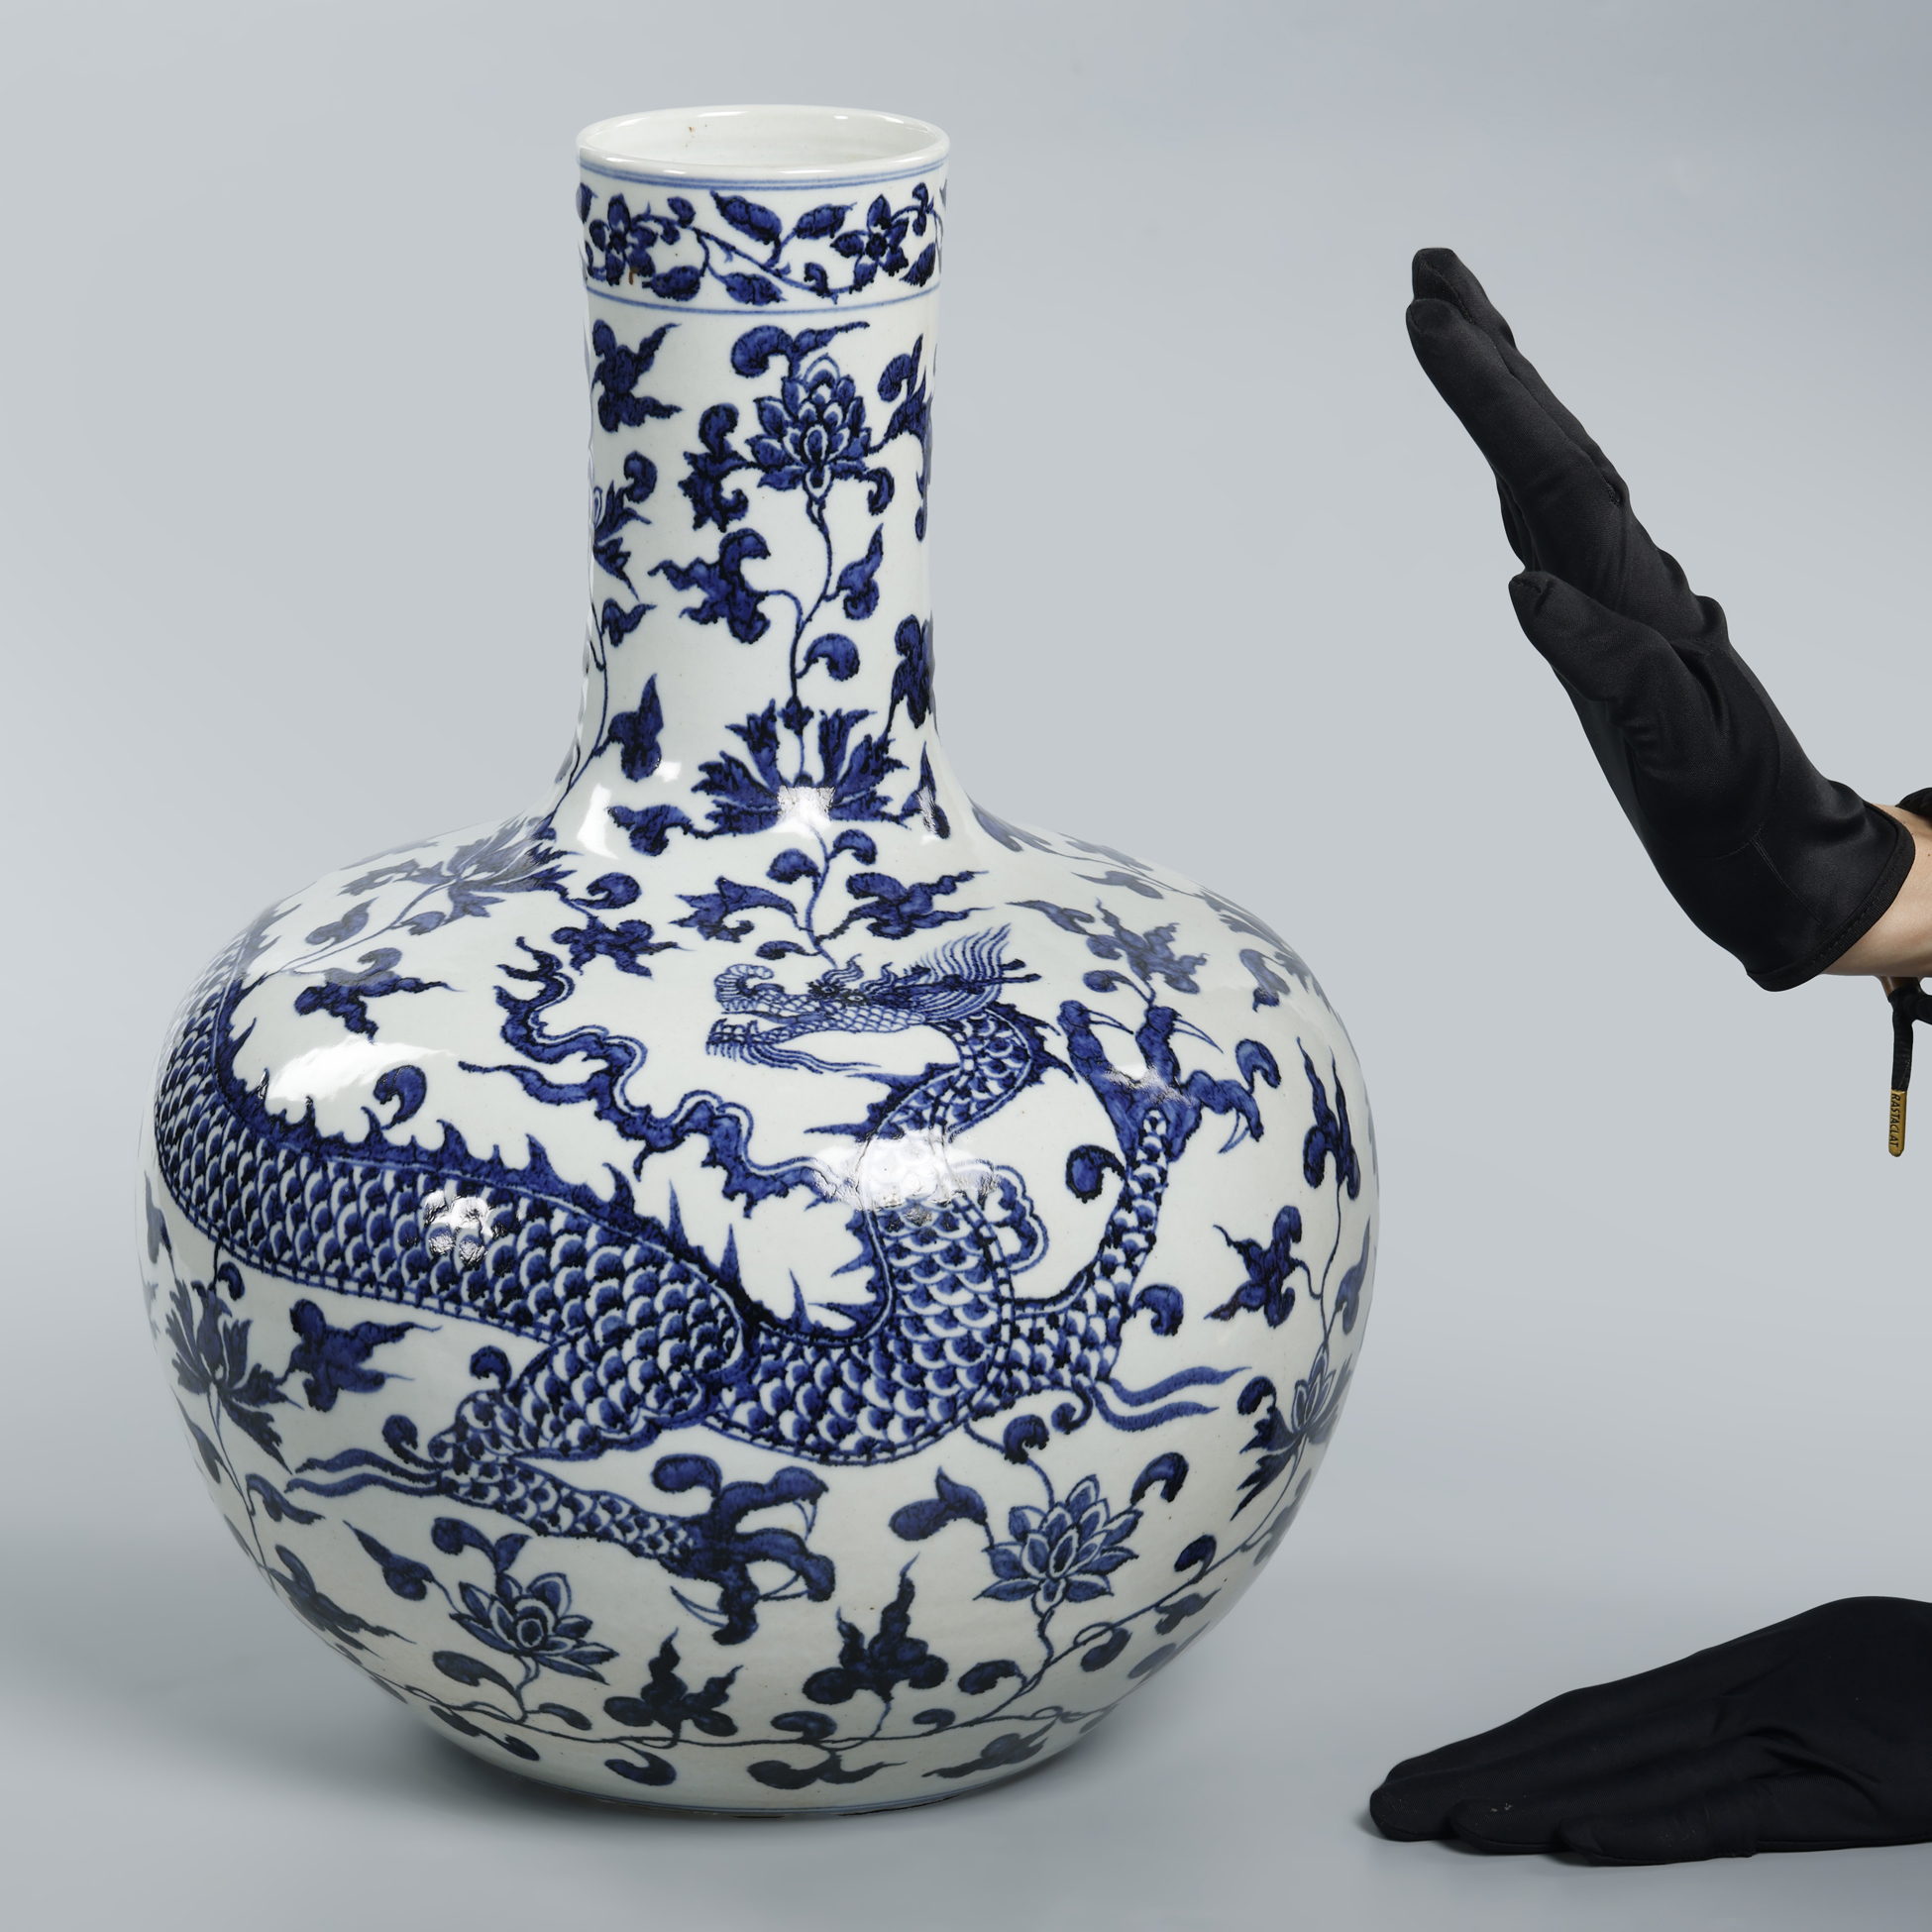 瘋了古陶瓷青花纏枝龍紋天球瓶(EH-IAAI11) NG - 補破網藝術文物拍賣